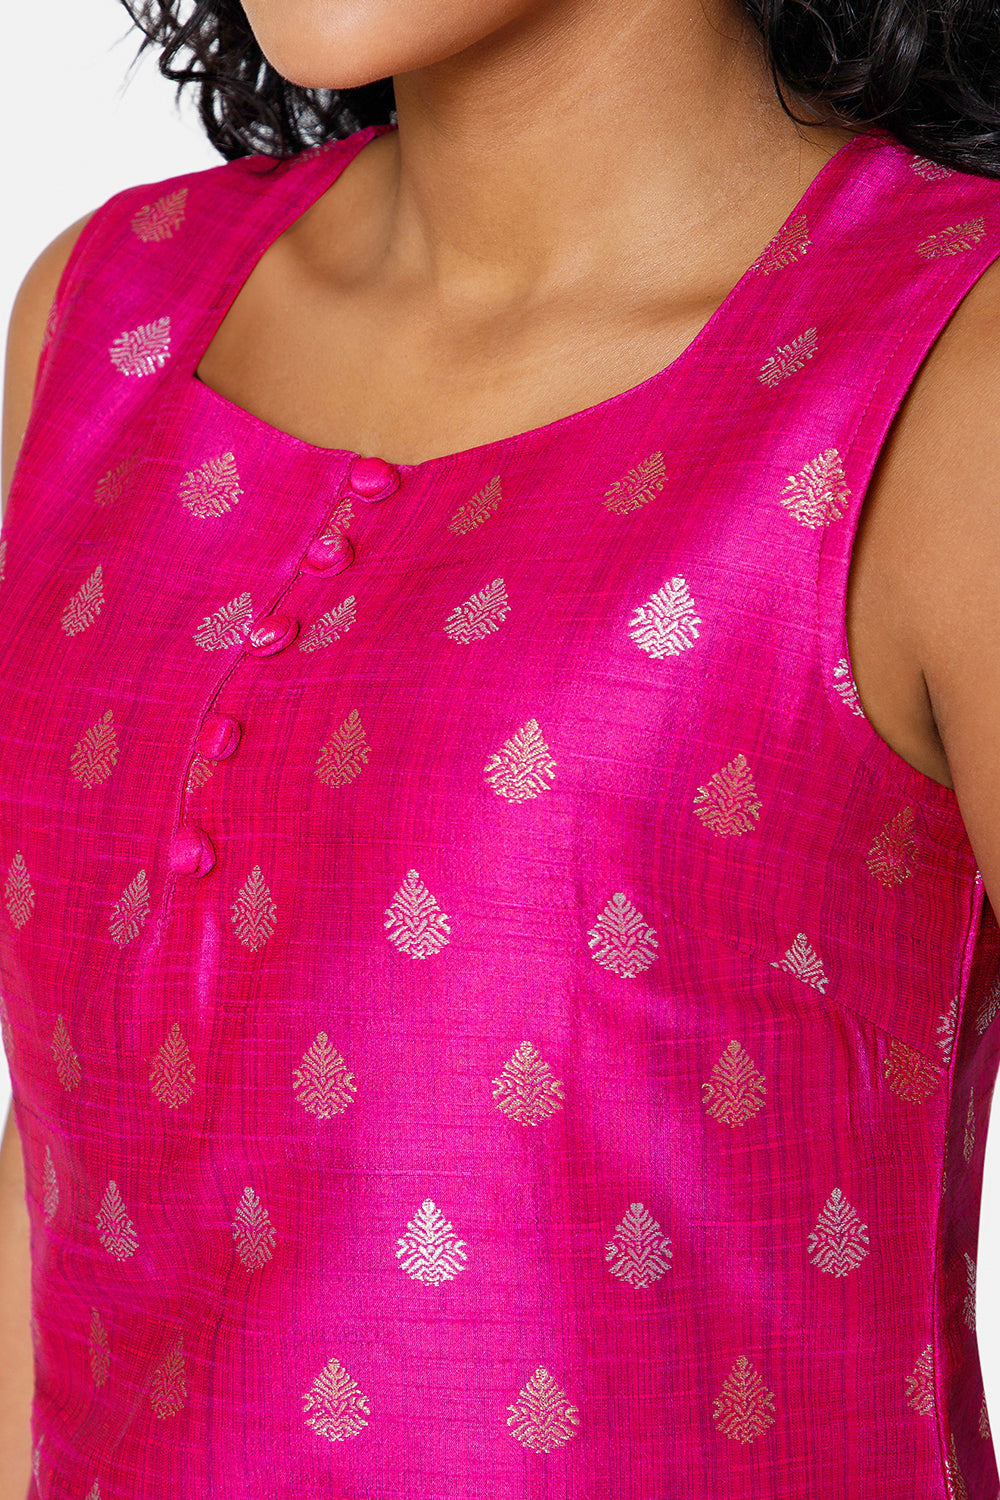 Mythri Women's Square Round Neck Sleeveless Casual Kurthi with Attachable Sleeves - Dark Pink - KU33